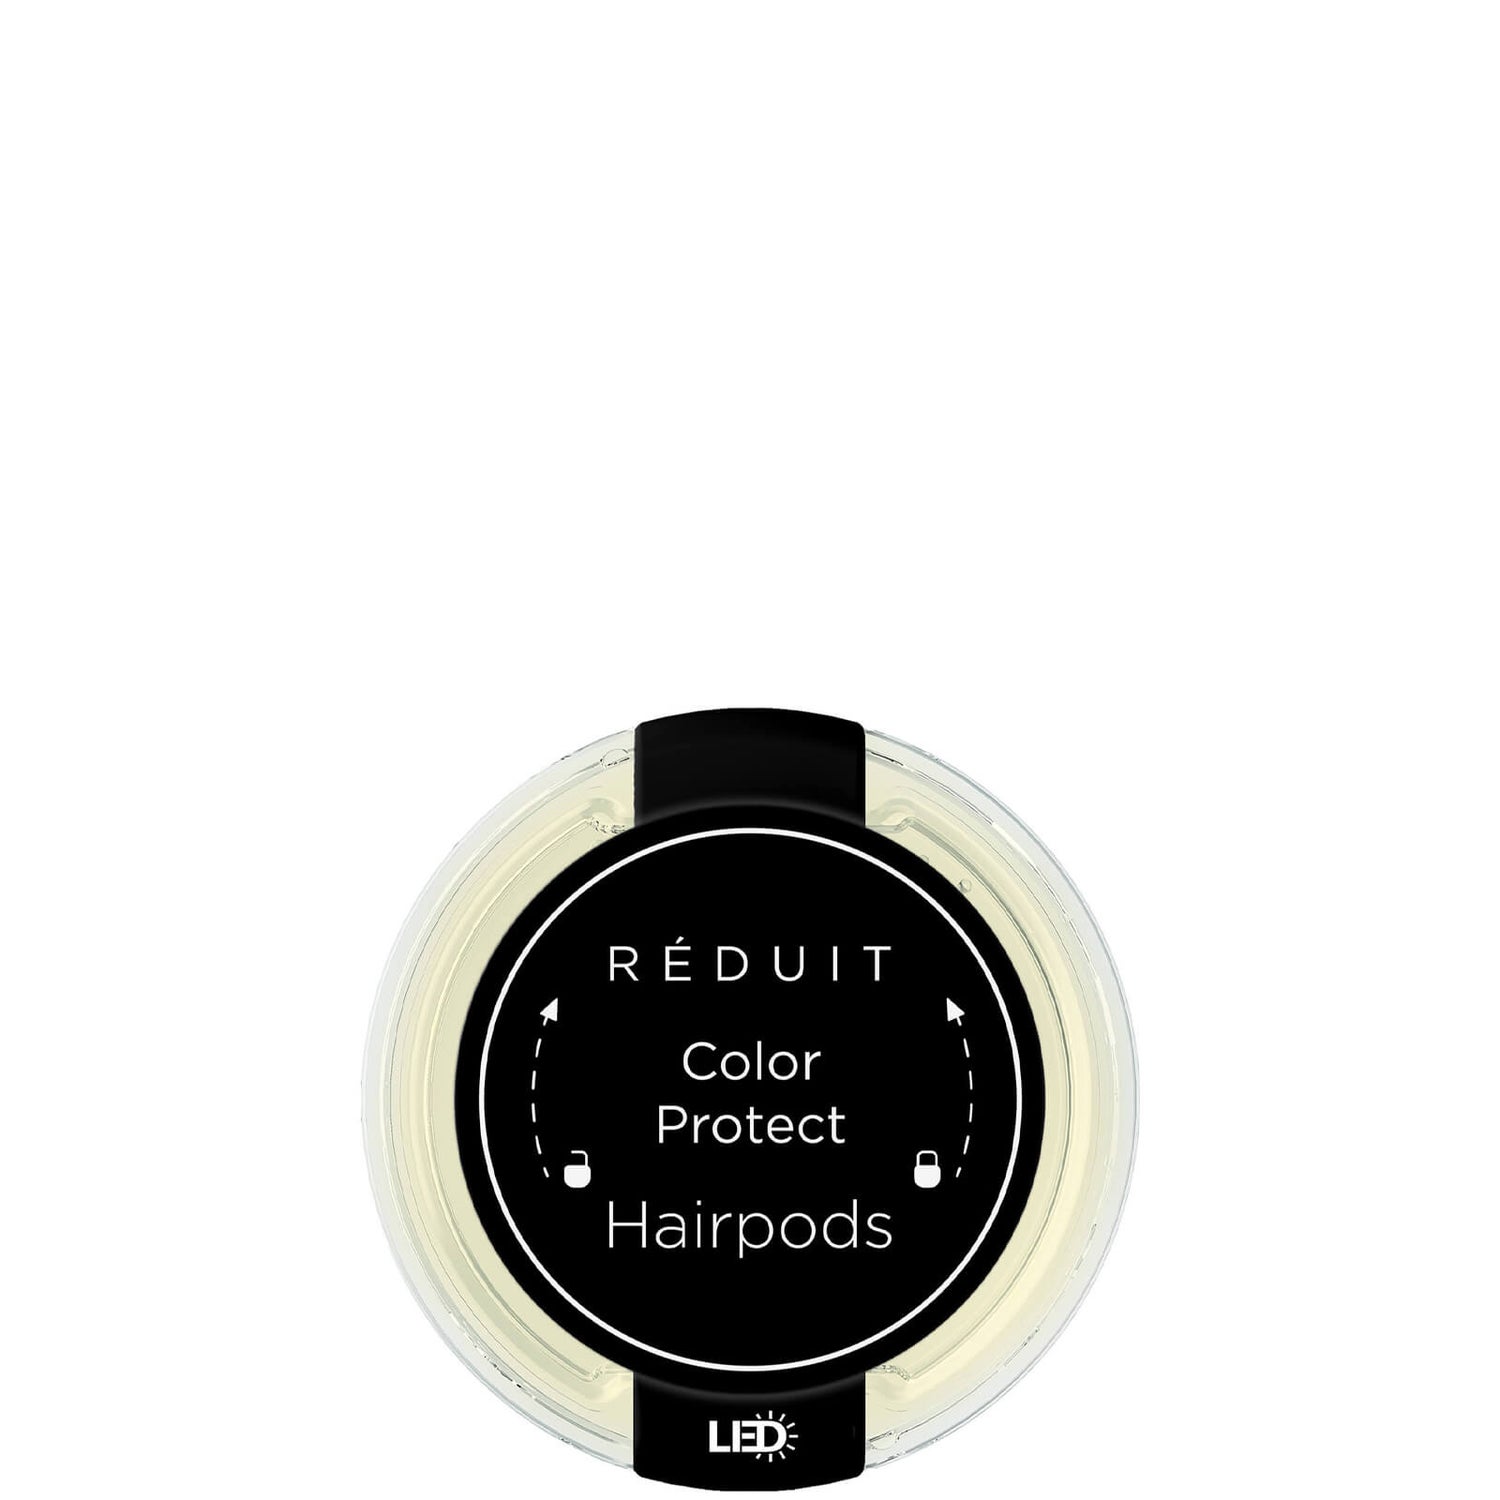 RÉDUIT Hairpods Color Protect LED